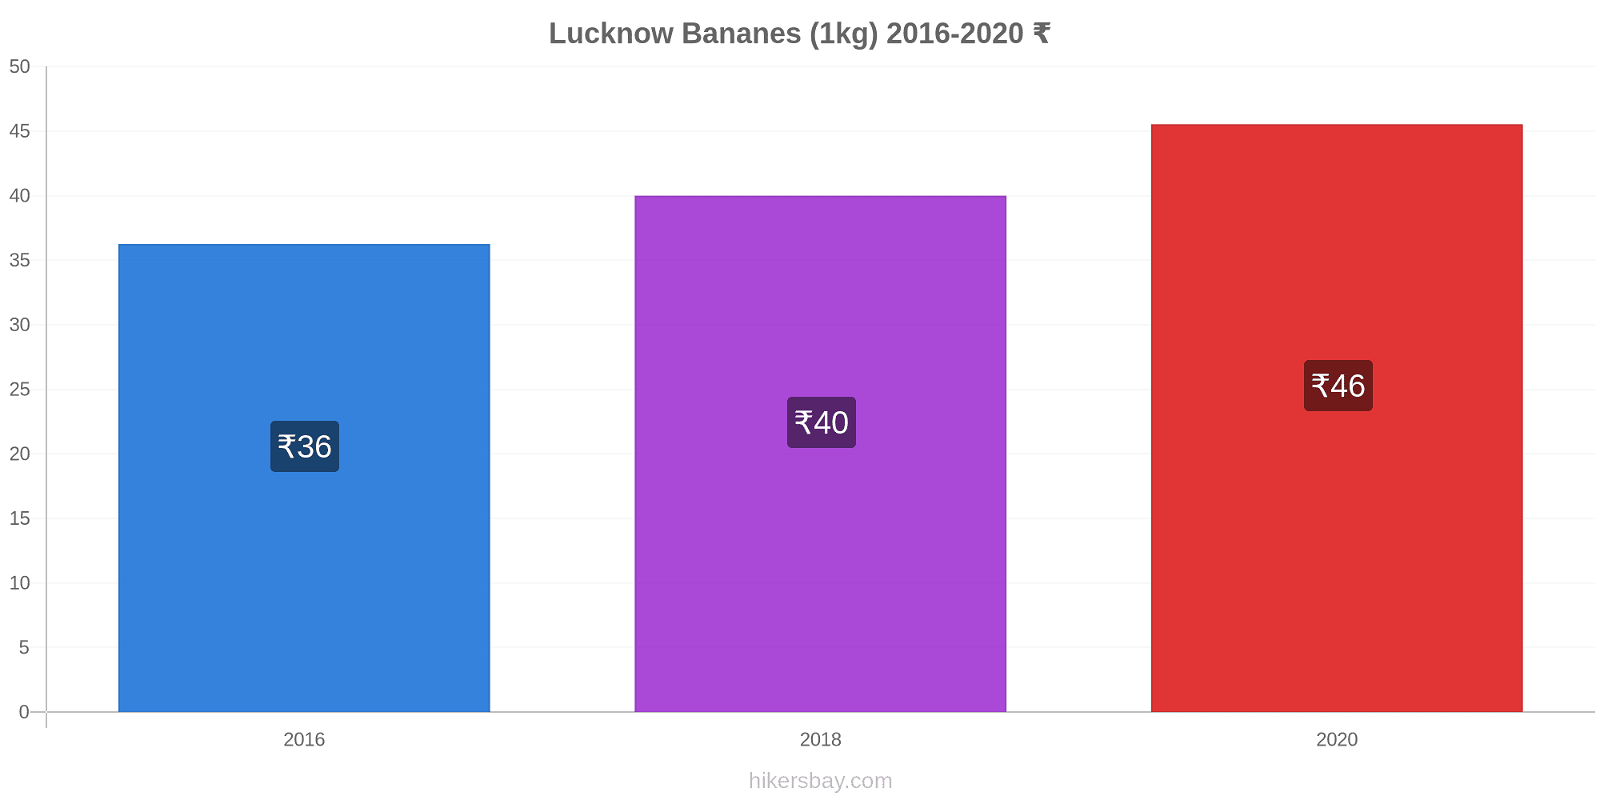 Lucknow changements de prix Bananes (1kg) hikersbay.com